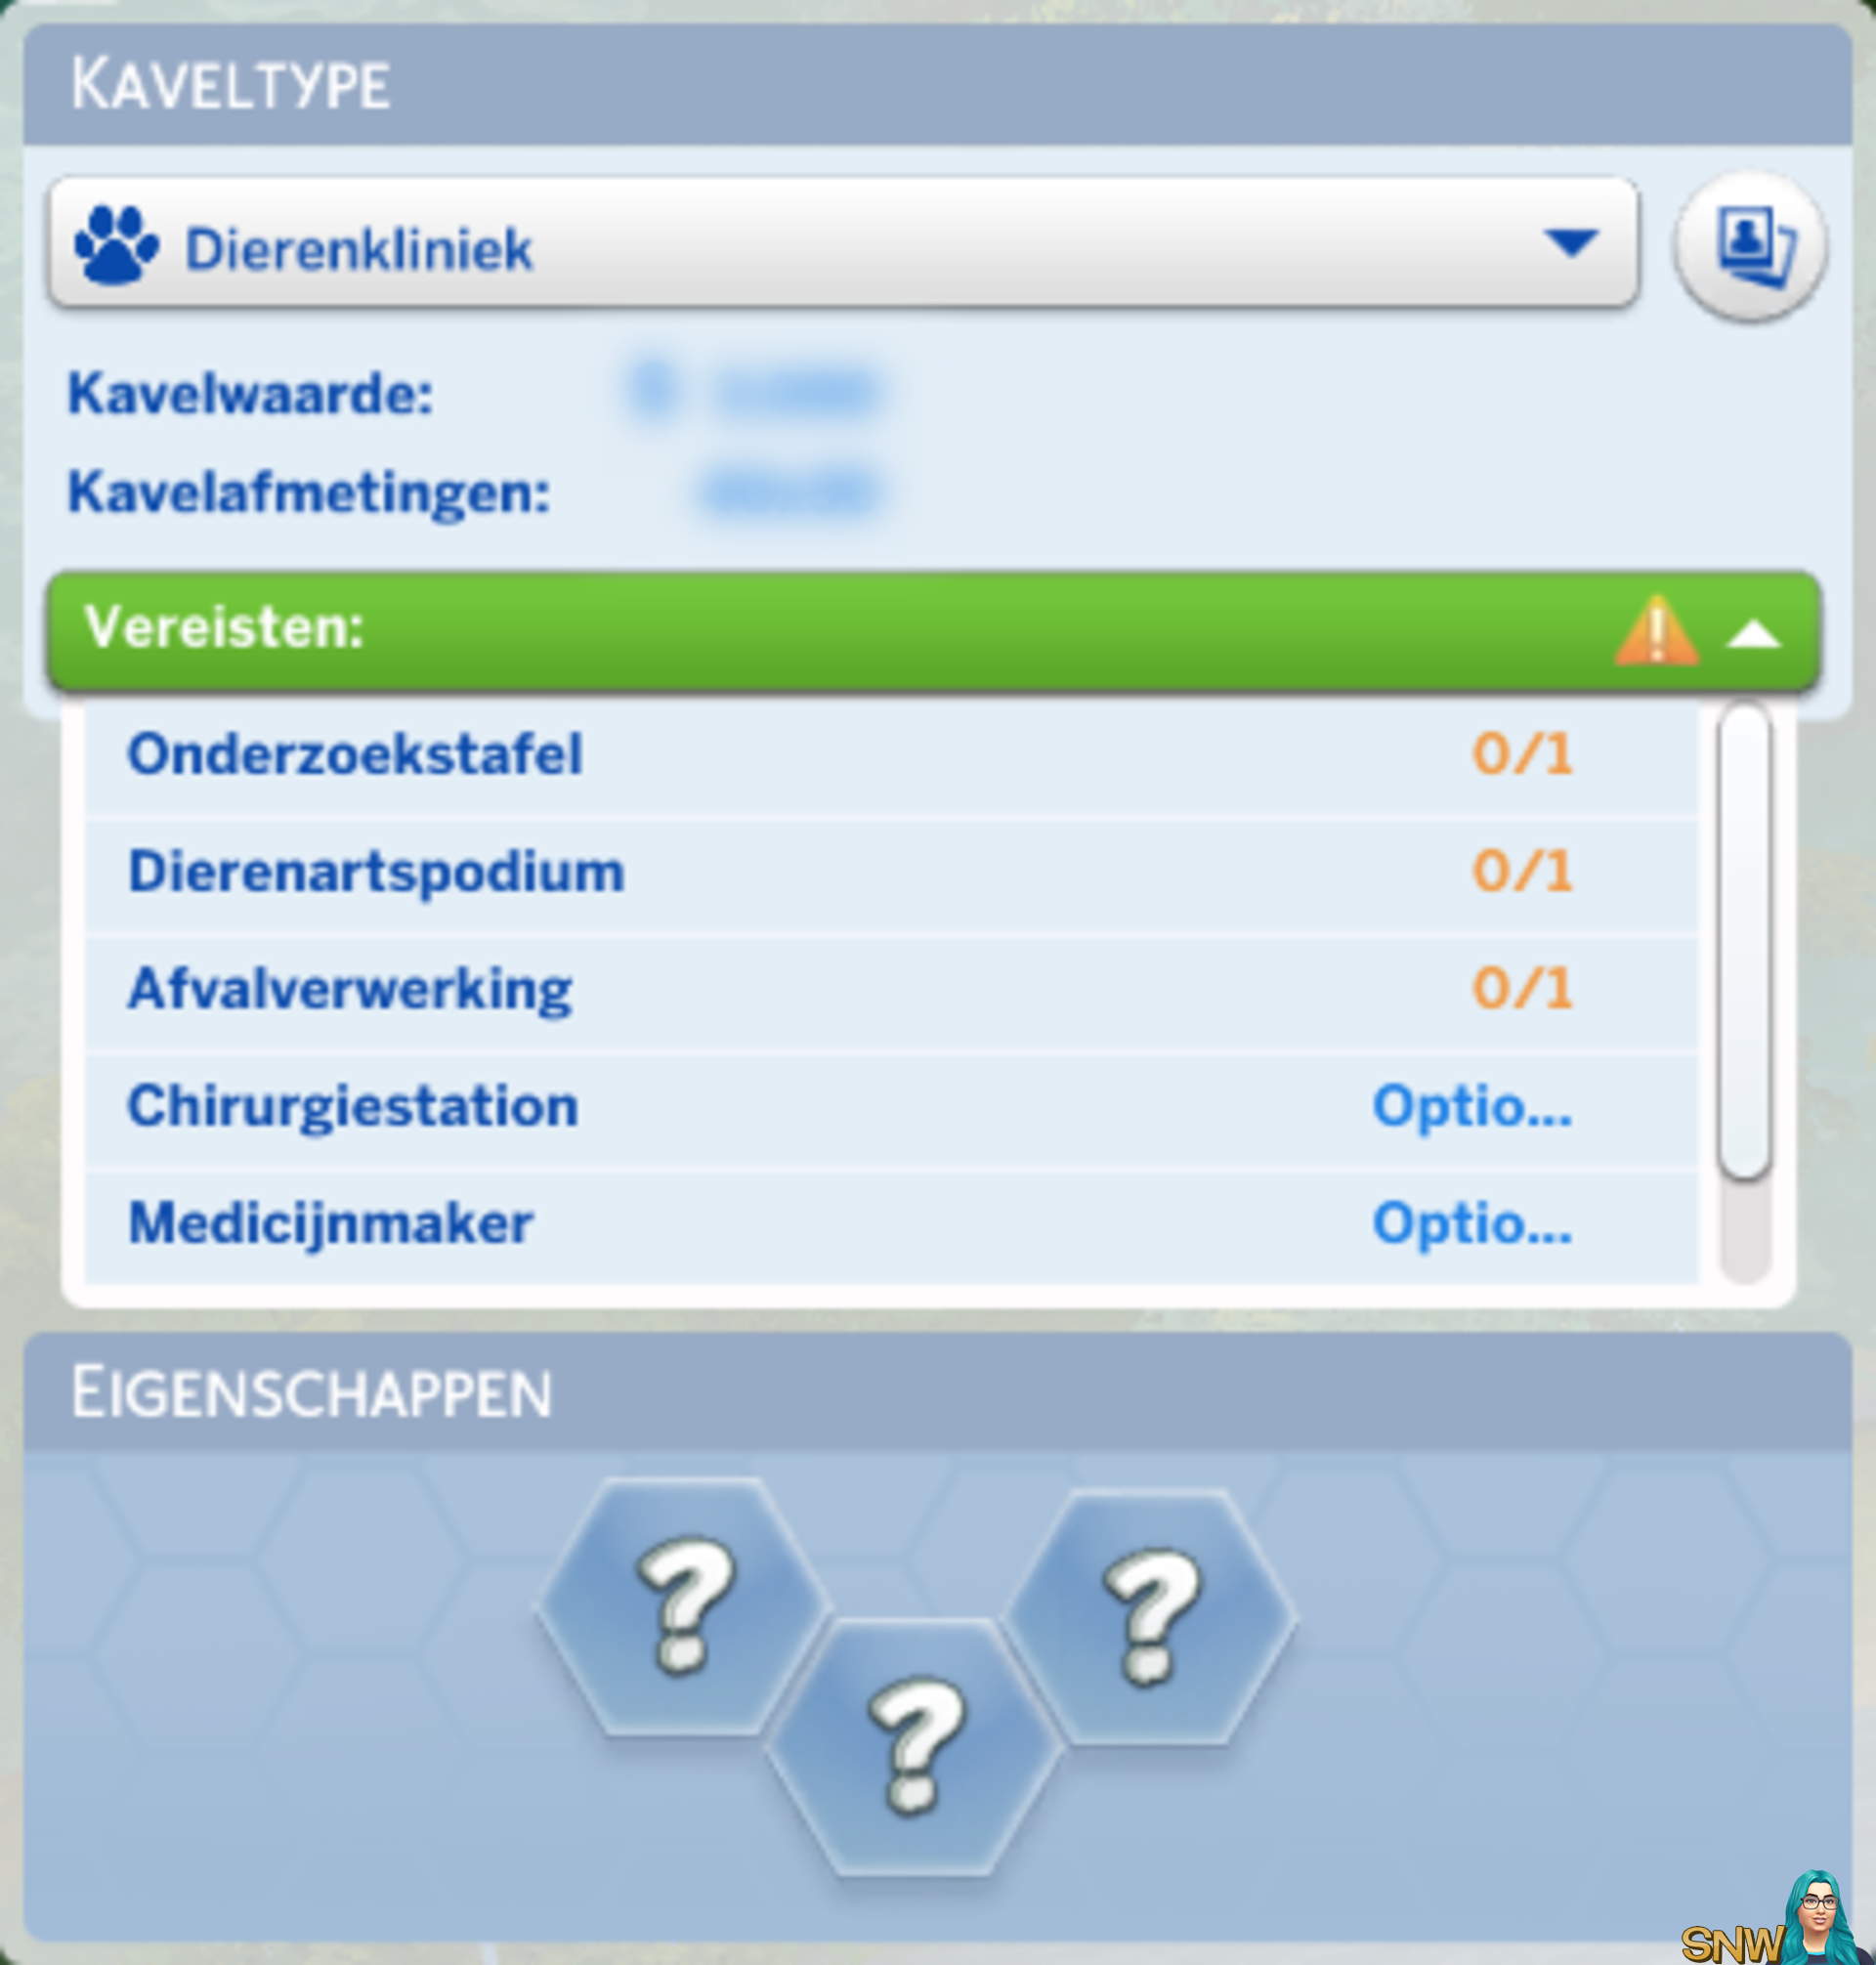 De Sims 4: Honden en Katten kaveltype Dierenkliniek